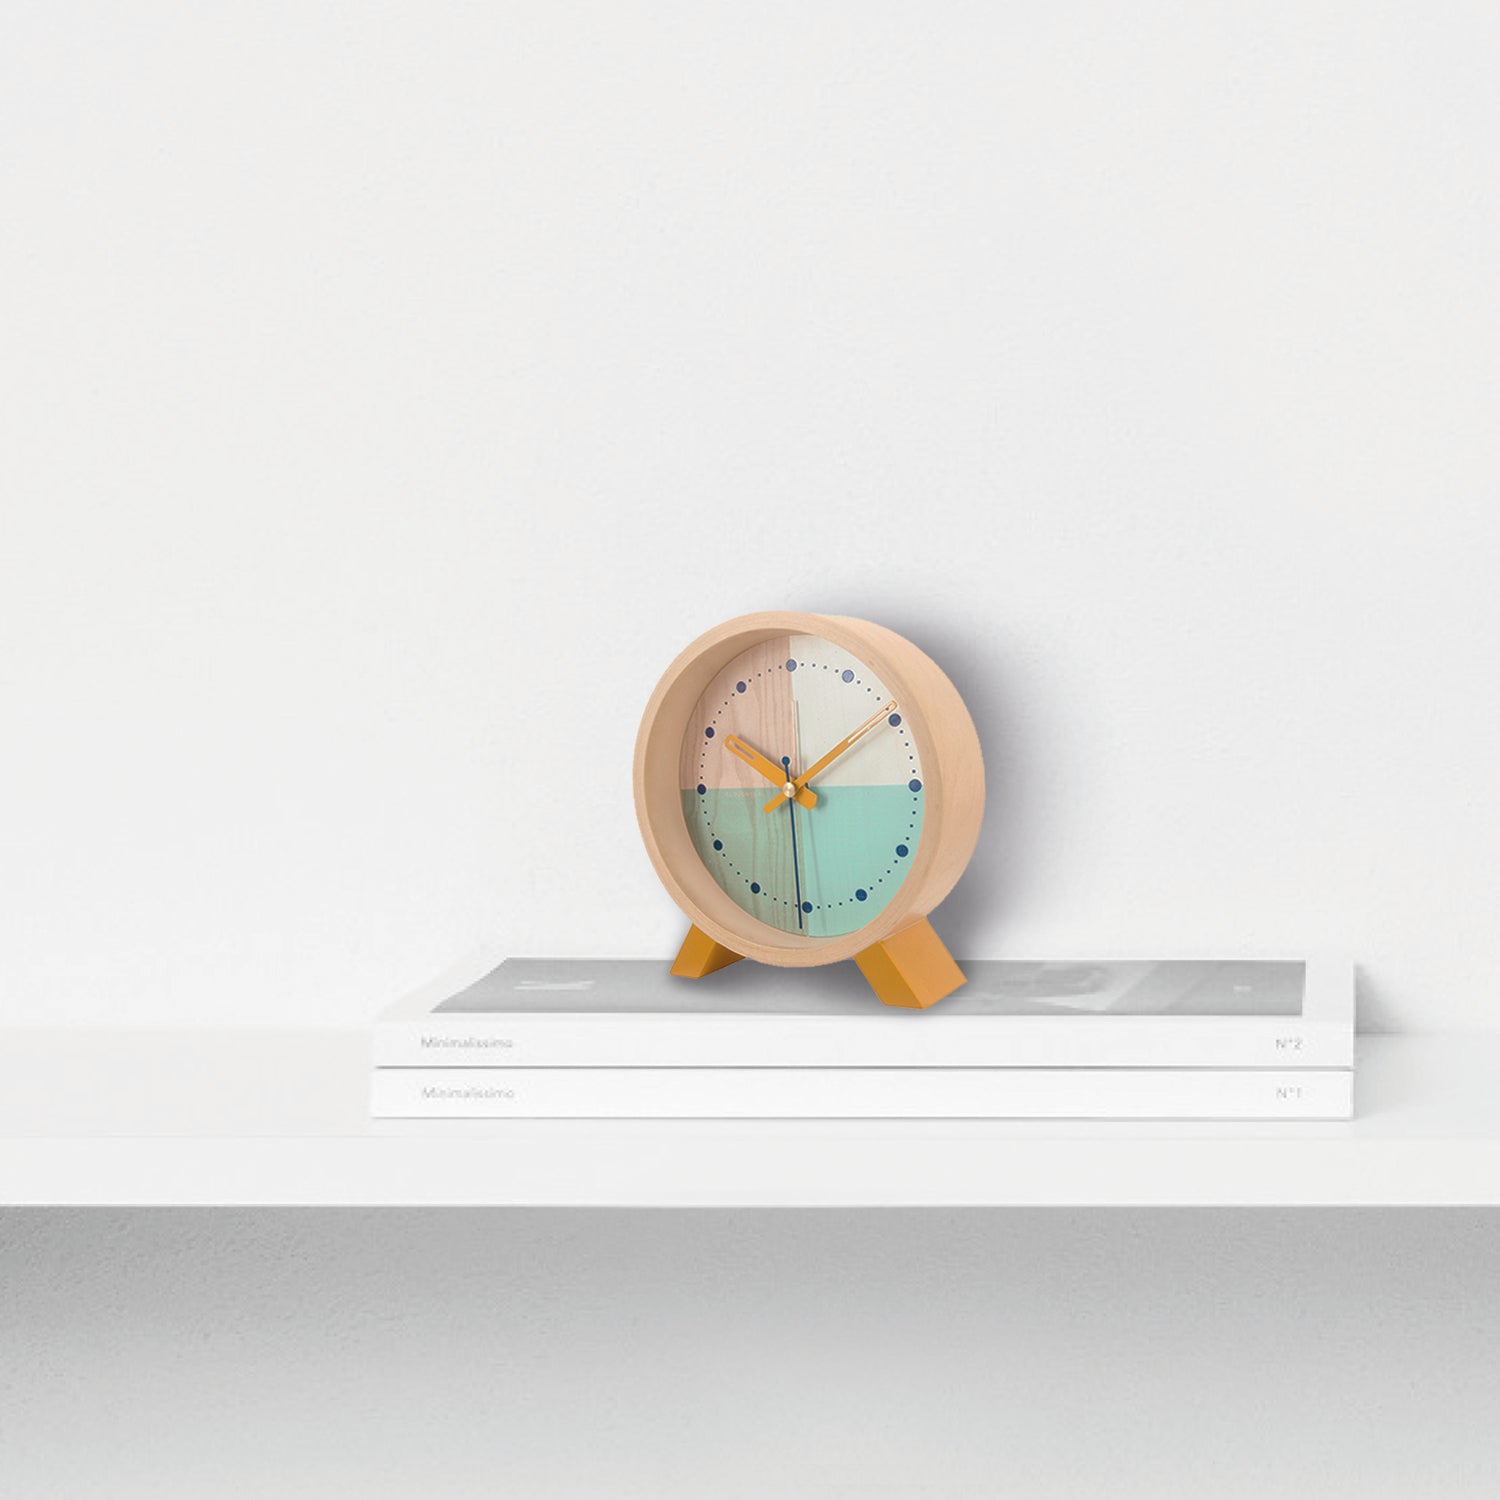 Stylish Alarm Clocks | Cloudnola - Wake Up in Style